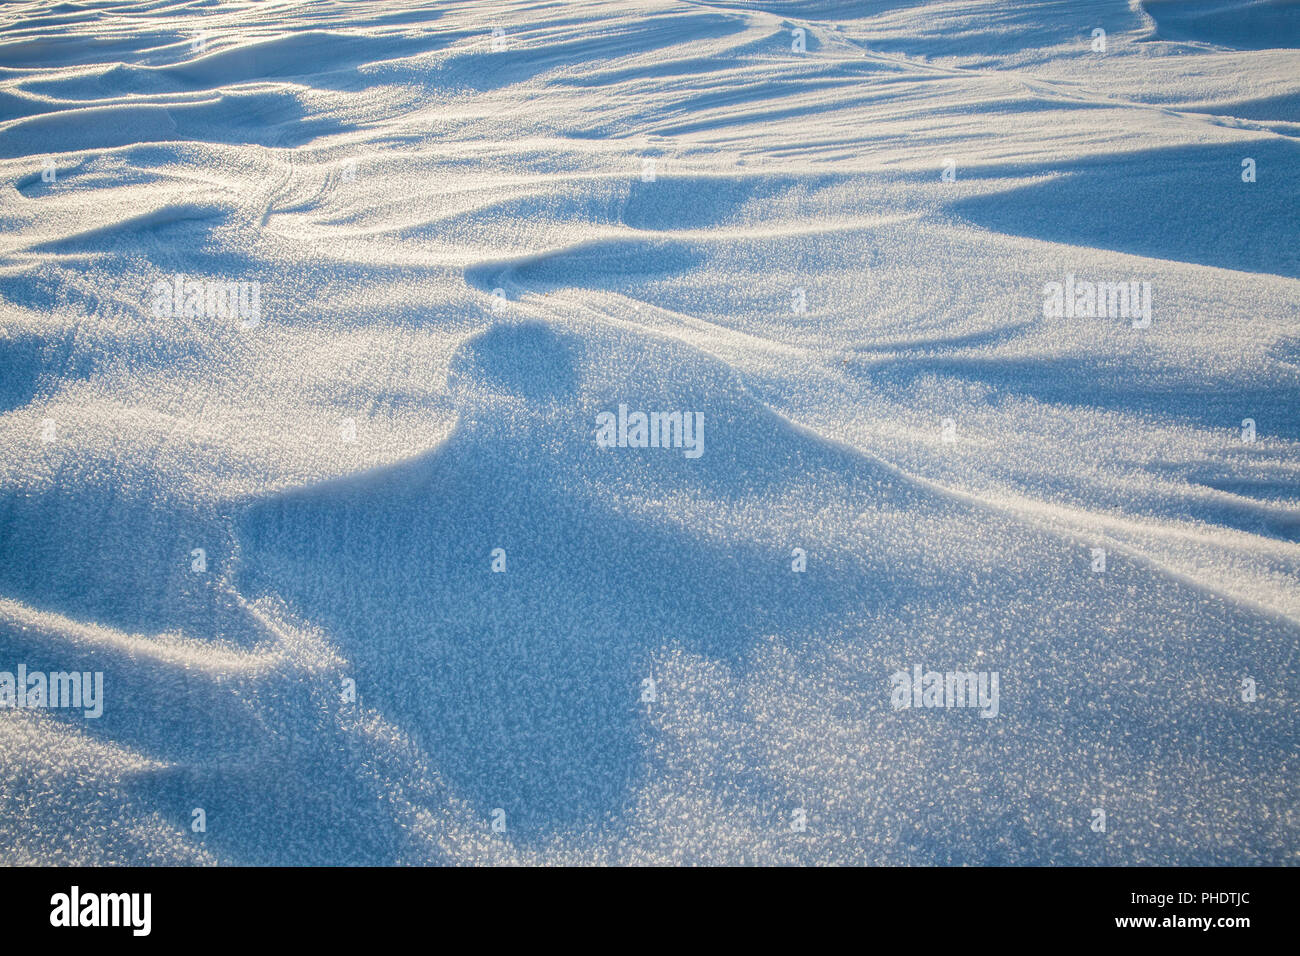 Une intéressante et inhabituelle de la surface de la neige avec de grosses vagues et de saillies éclairées par la lumière du soleil, la structure de la neige sur la surface Banque D'Images